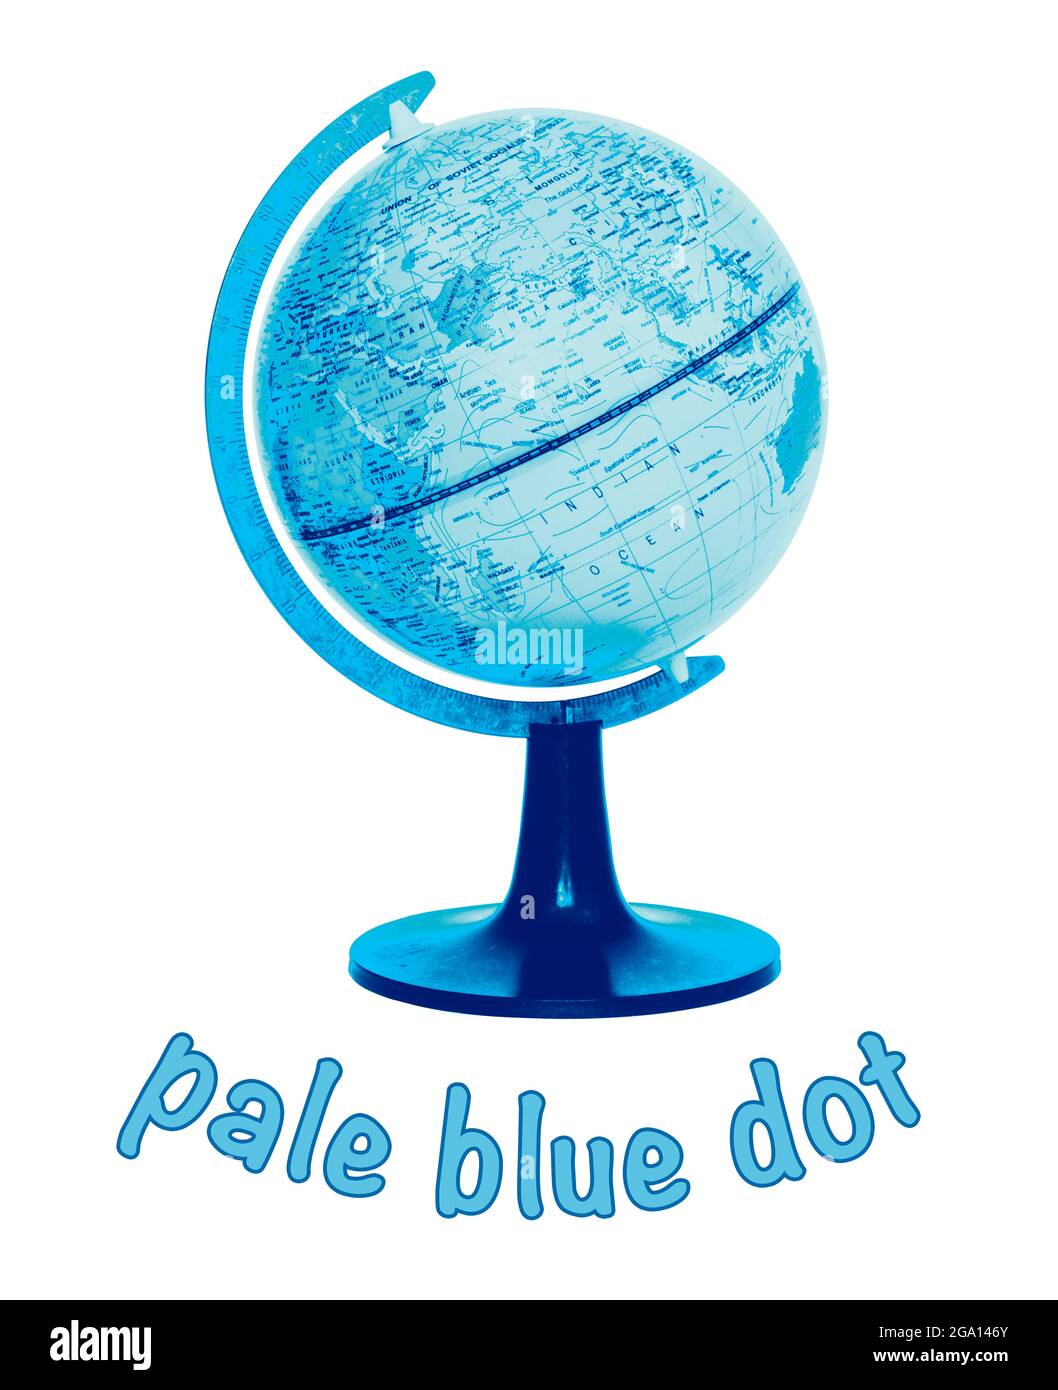 Immagine concettuale di un piccolo globo del mondo e la didascalia 'Pale Blue Dot' su sfondo bianco Foto Stock